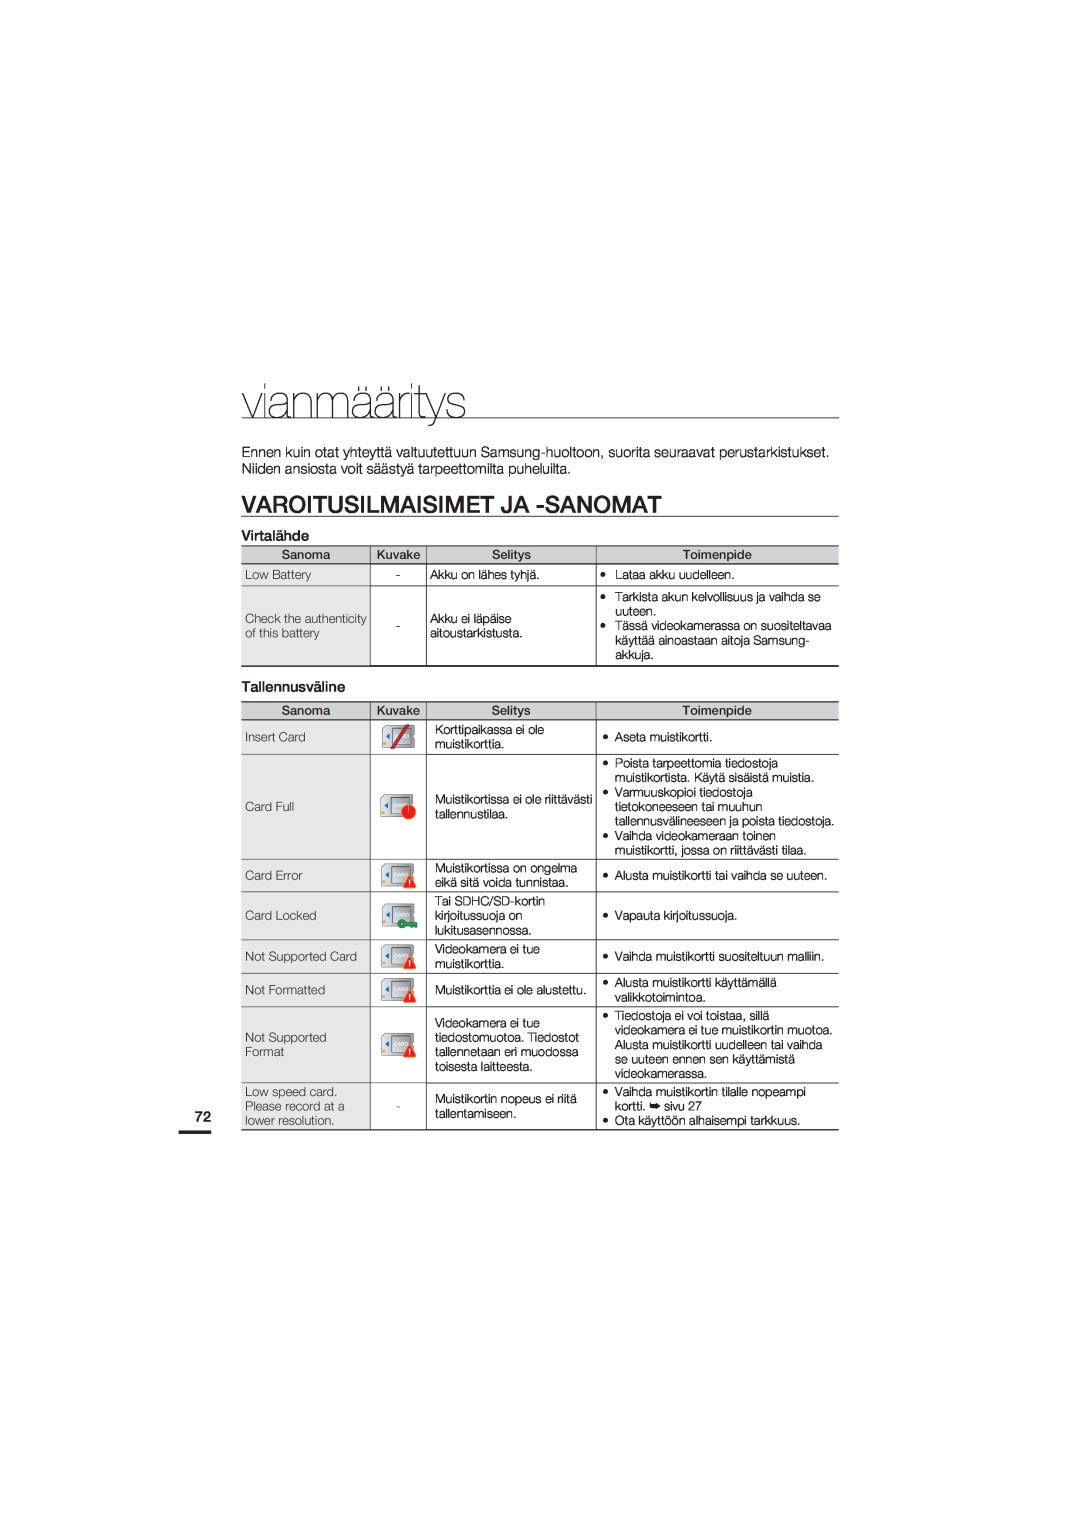 Samsung HMX-U20BP/EDC manual vianmääritys, Varoitusilmaisimet Ja -Sanomat 